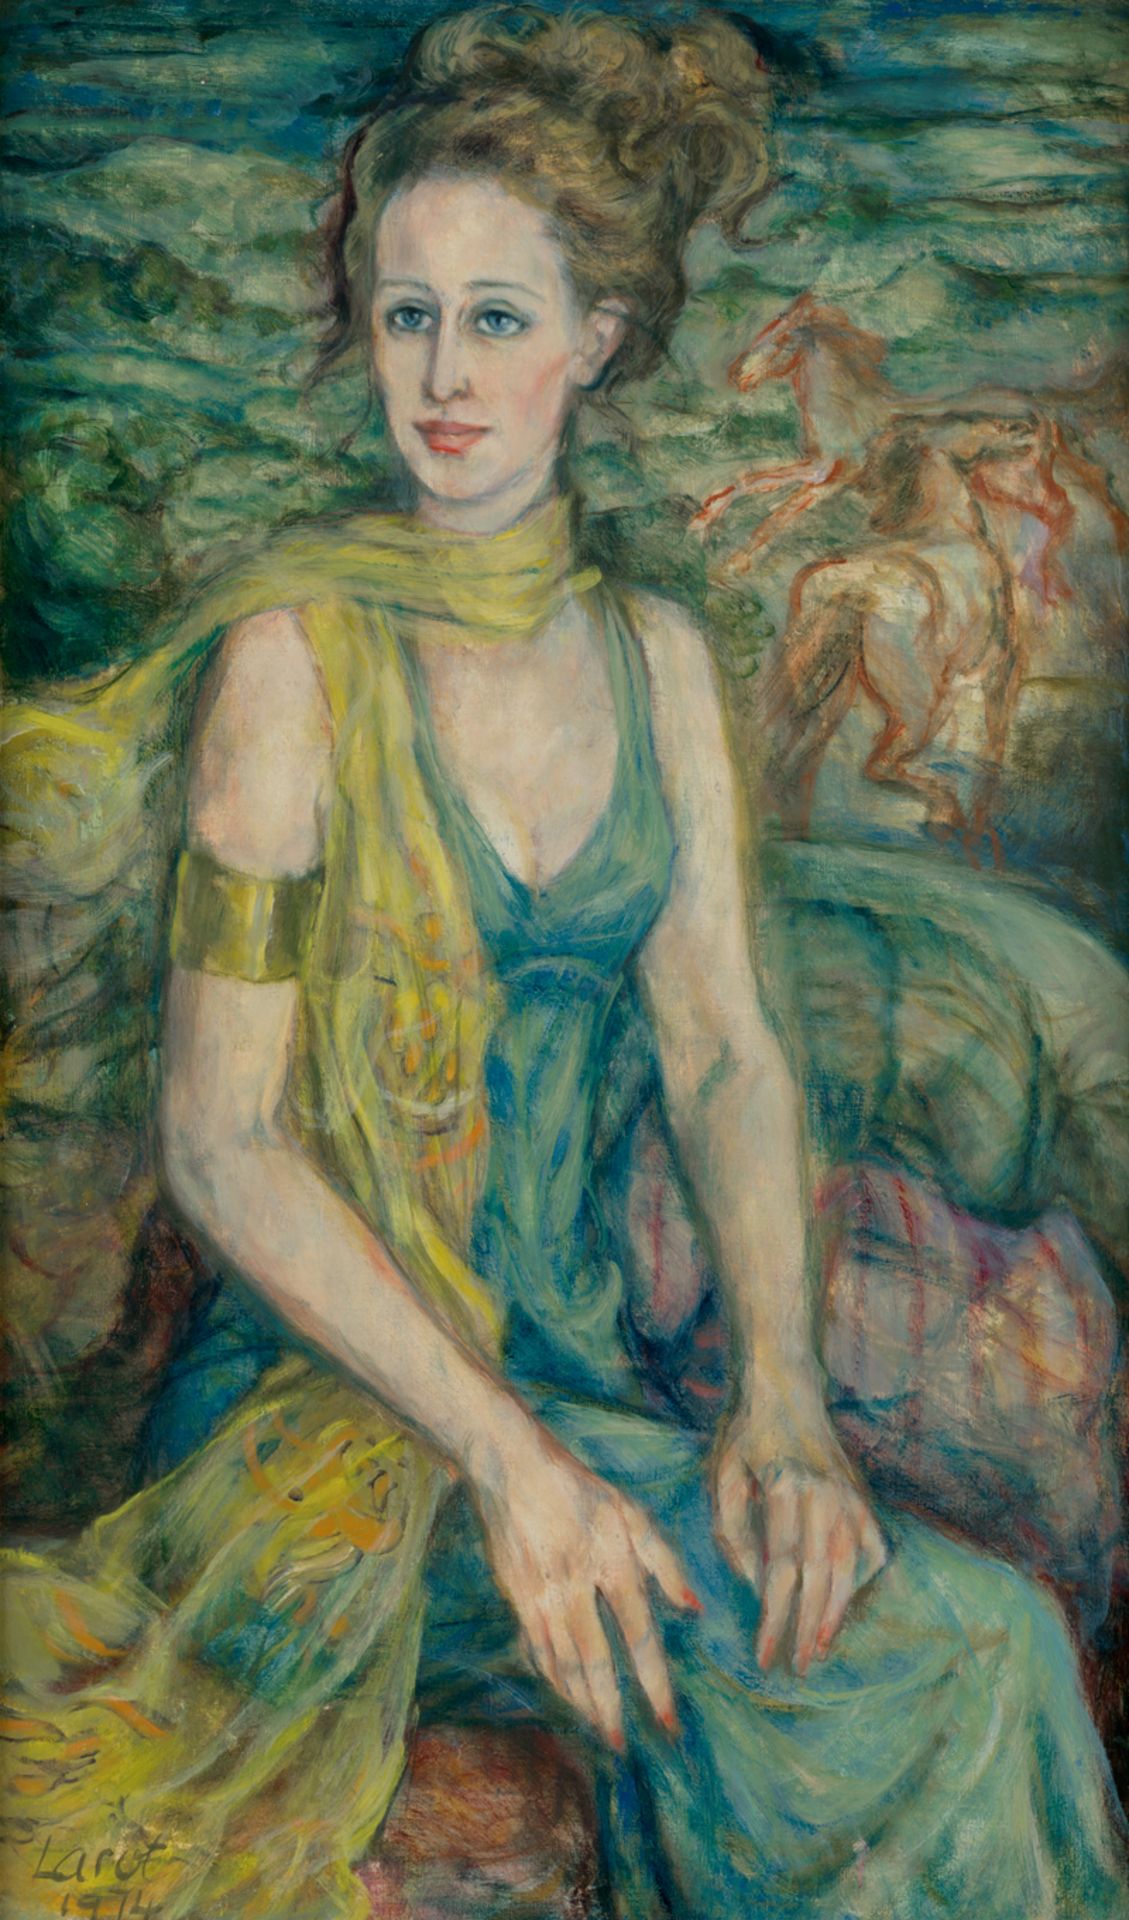 Larot, Dina: Porträt einer Frau mit gelben Seidenschal